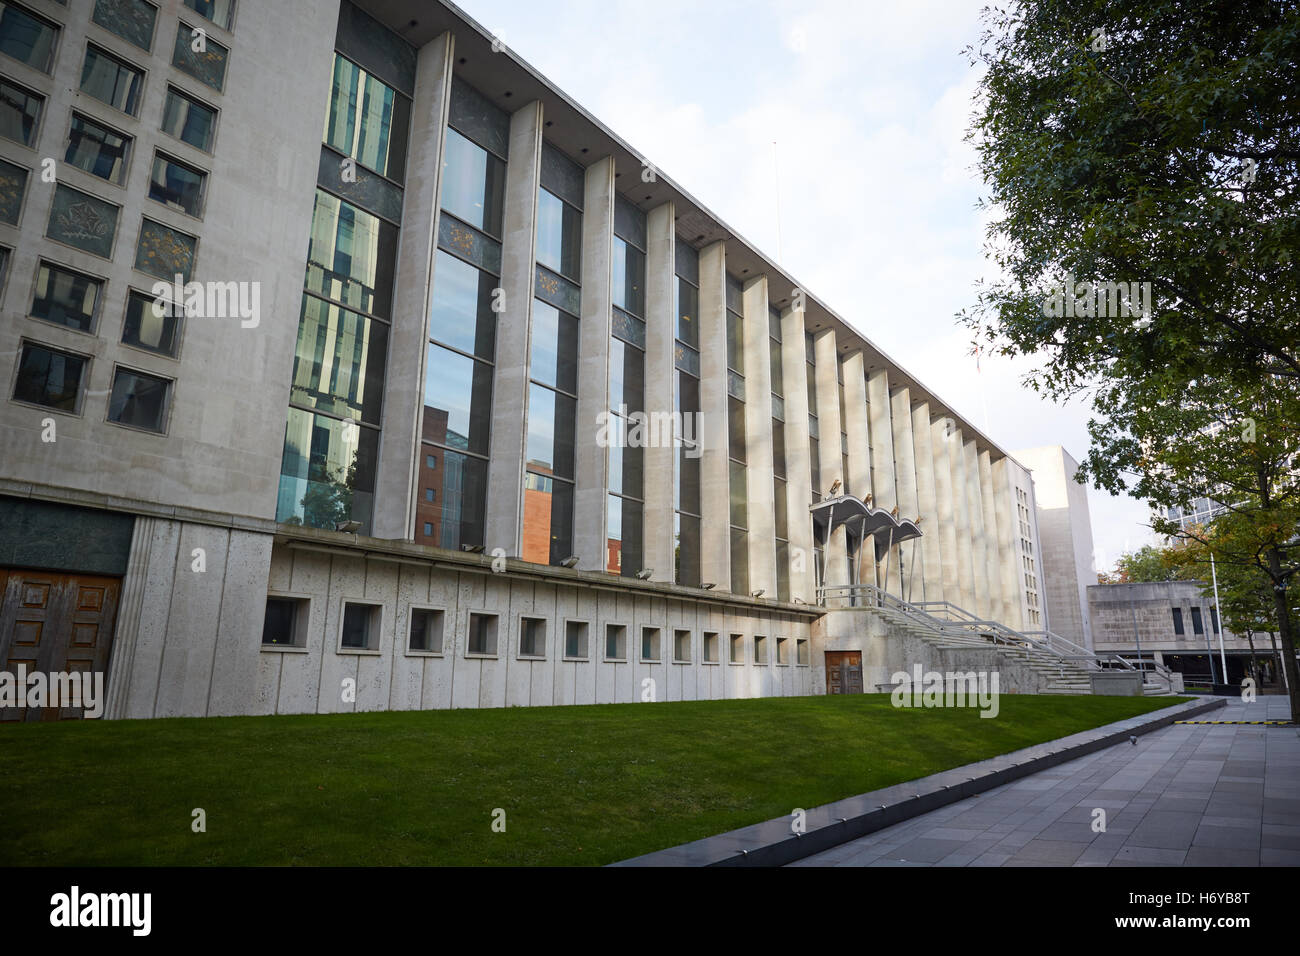 Le Tribunal de la Couronne de Manchester Square de la Couronne des mesures extérieures de la loi de l'architecture de l'immeuble du centre de la justice crime law punishm Banque D'Images